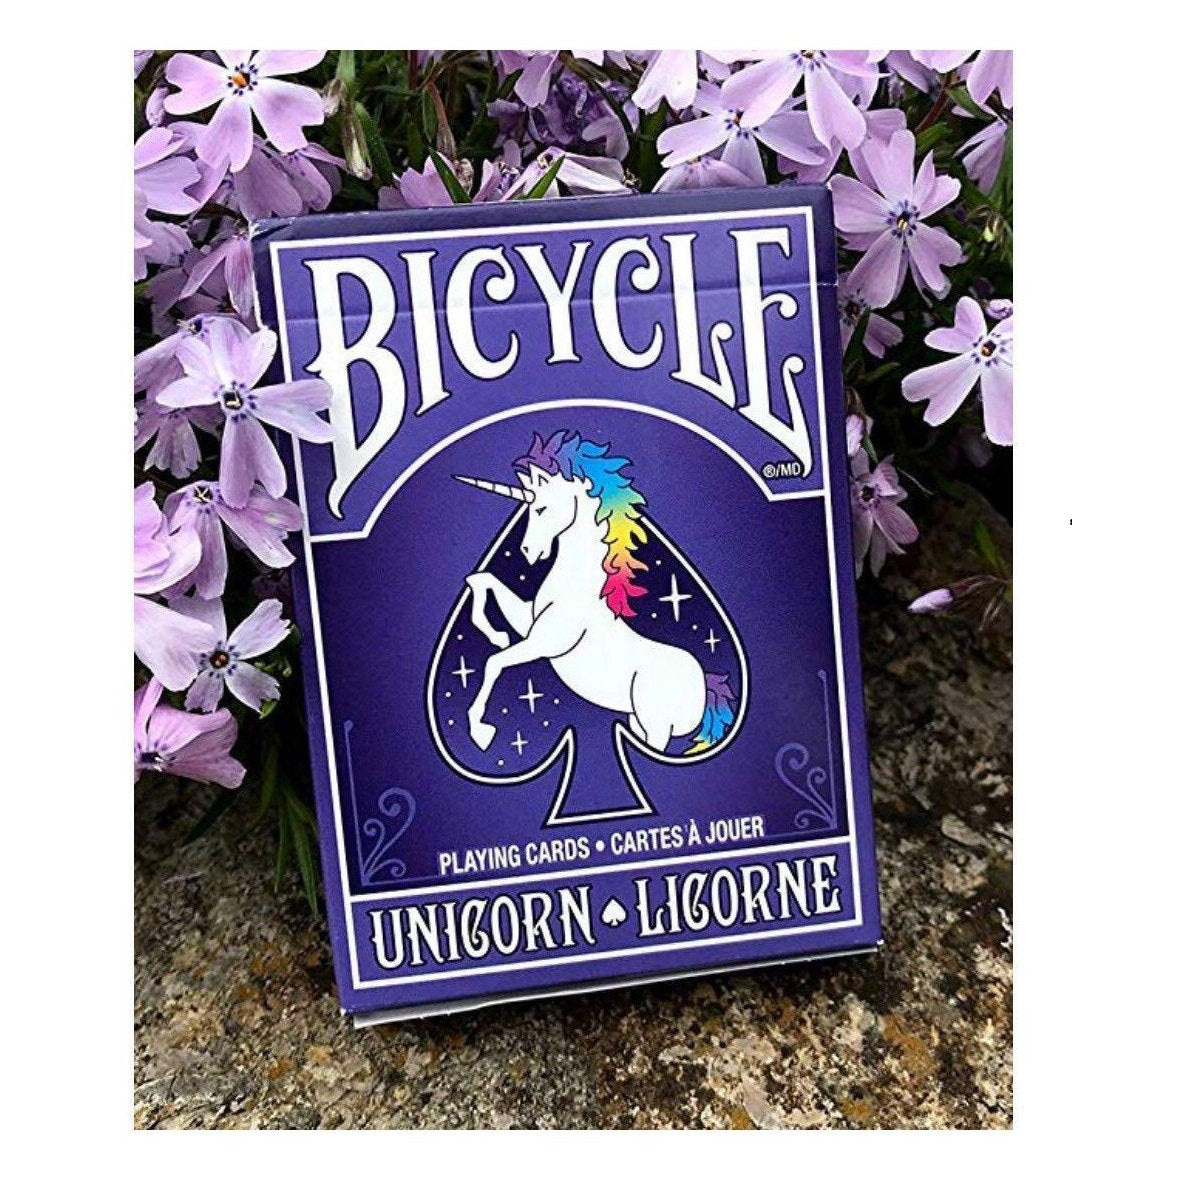 Bicycle Unicorn Playing Cards-Vintage Unicorn-United States Playing Cards Company-Ace Cards & Collectibles